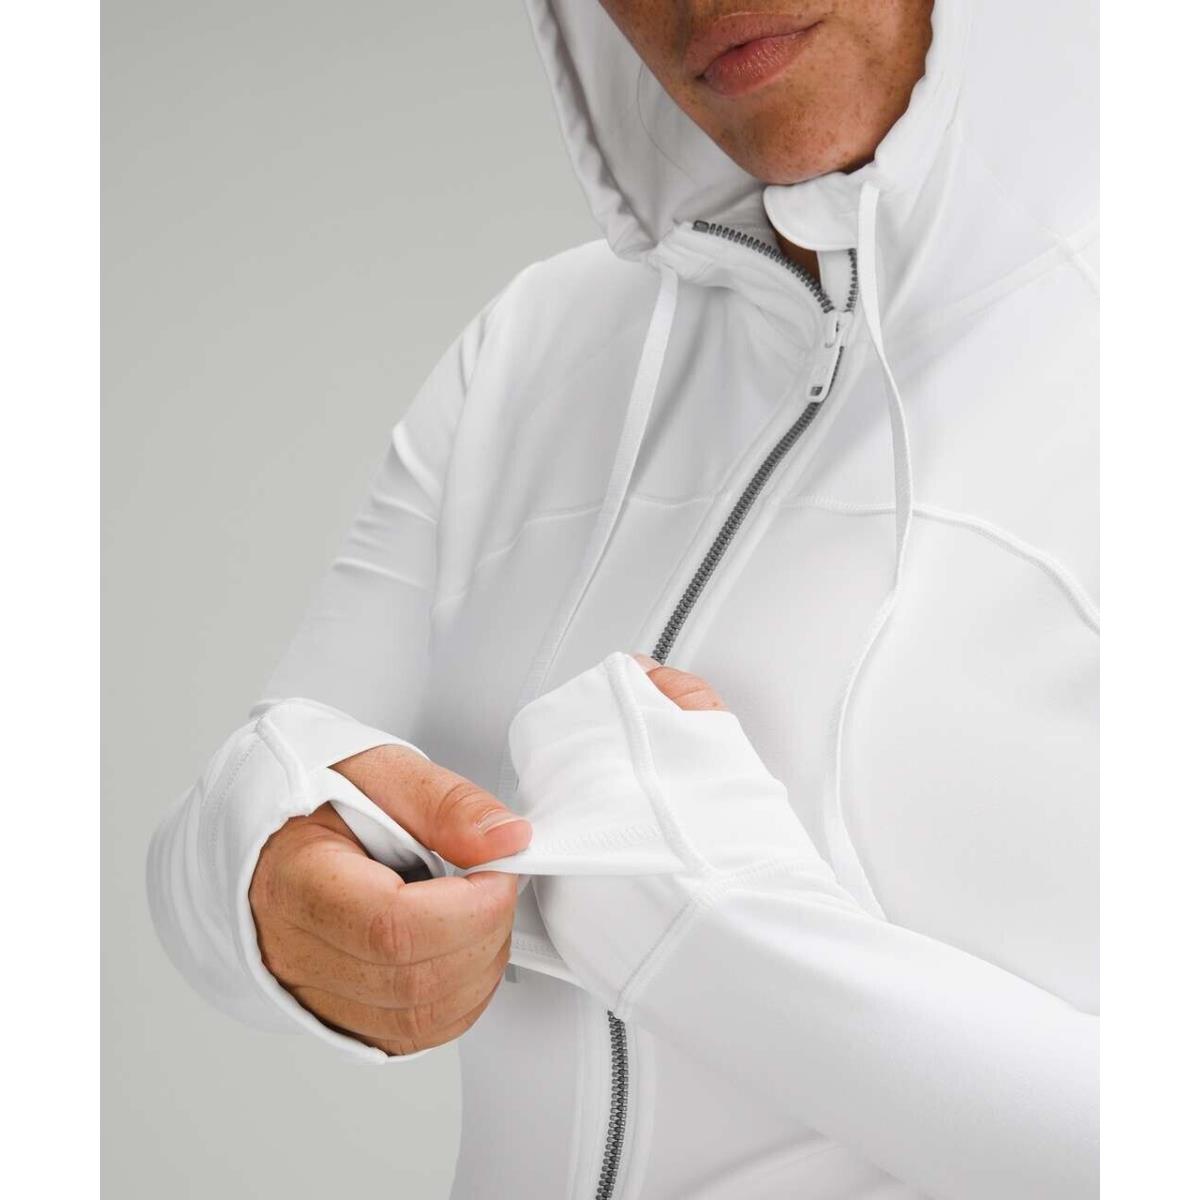 Lululemon Hooded Define Jacket Nulu 10 White Hoodie Activewear Run